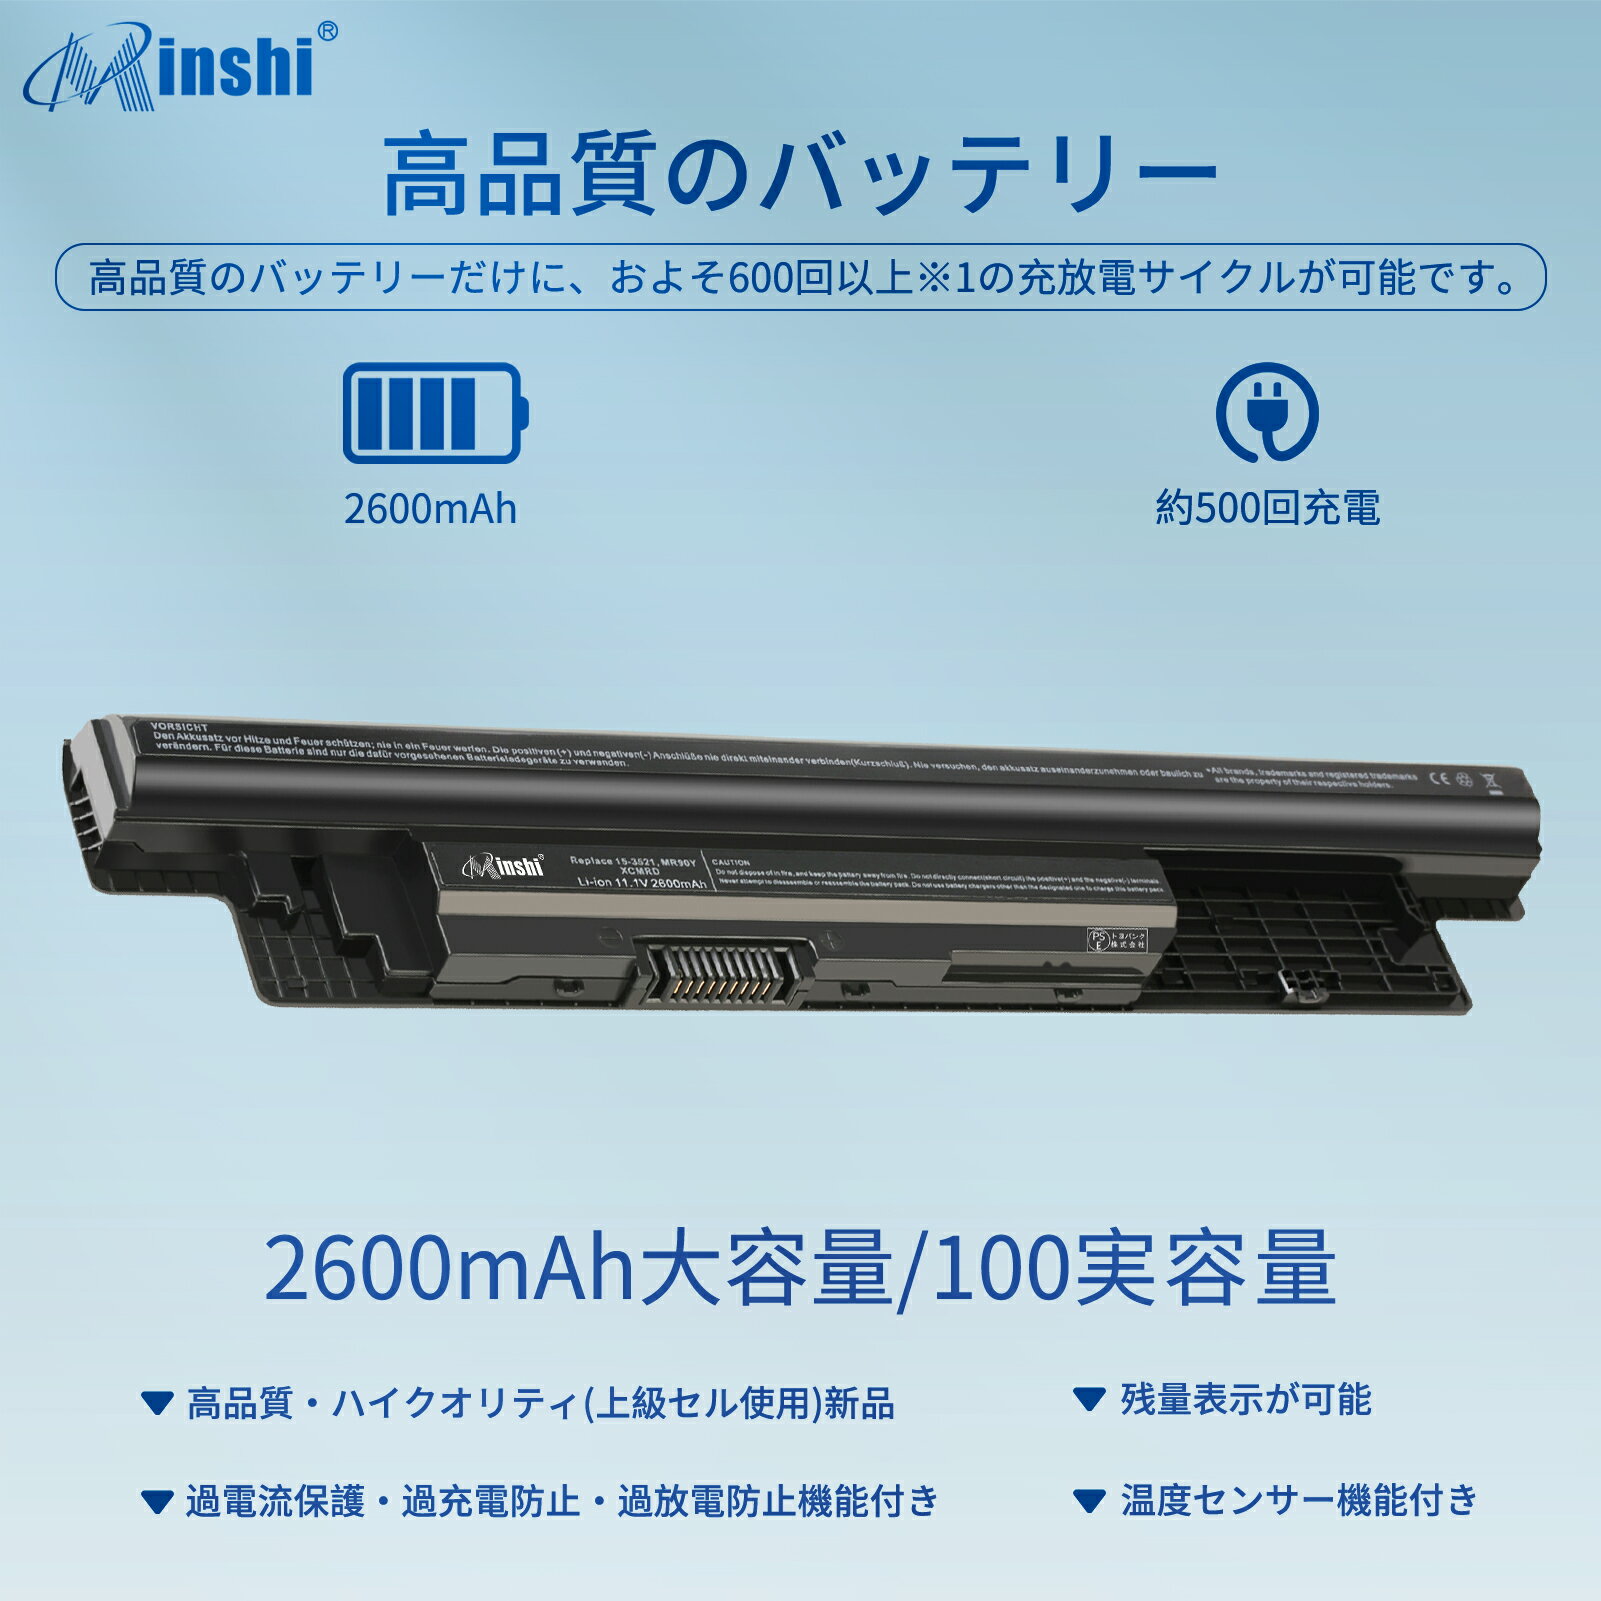 minshi 新品 Dell 312-1390 互換バッテリー 対応 高品質交換用電池パック PSE認証 1年間保証 2600mAh 2